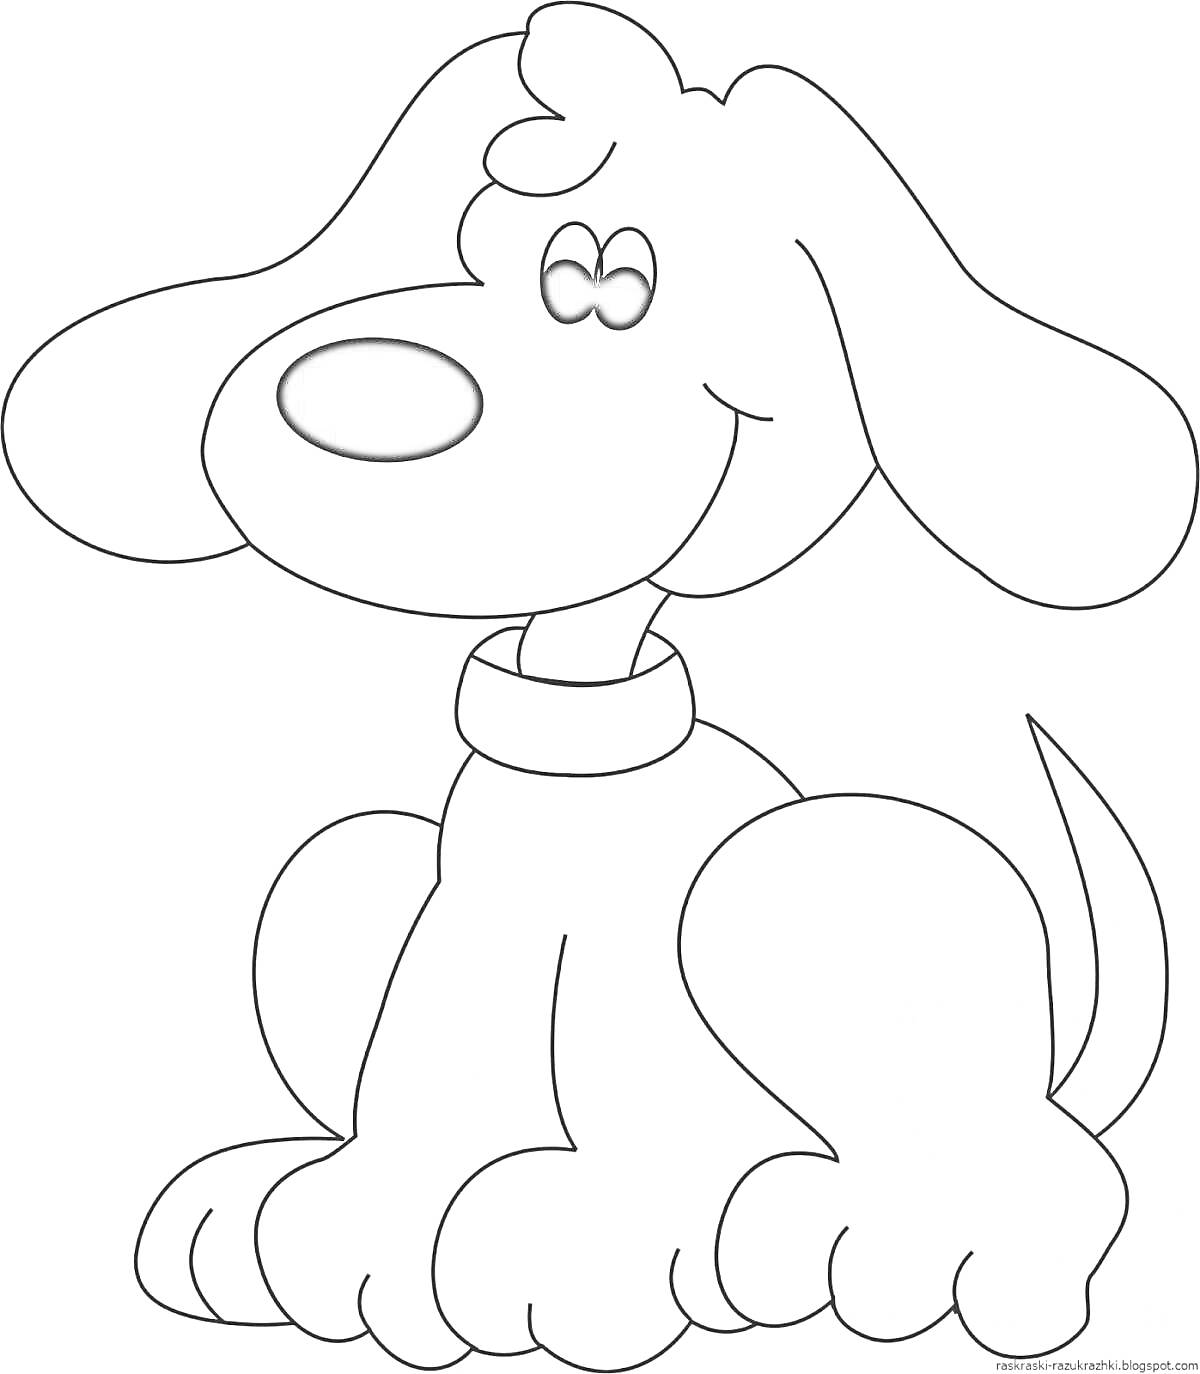 Раскраска Собачка с ошейником, сидящая, с большими ушами